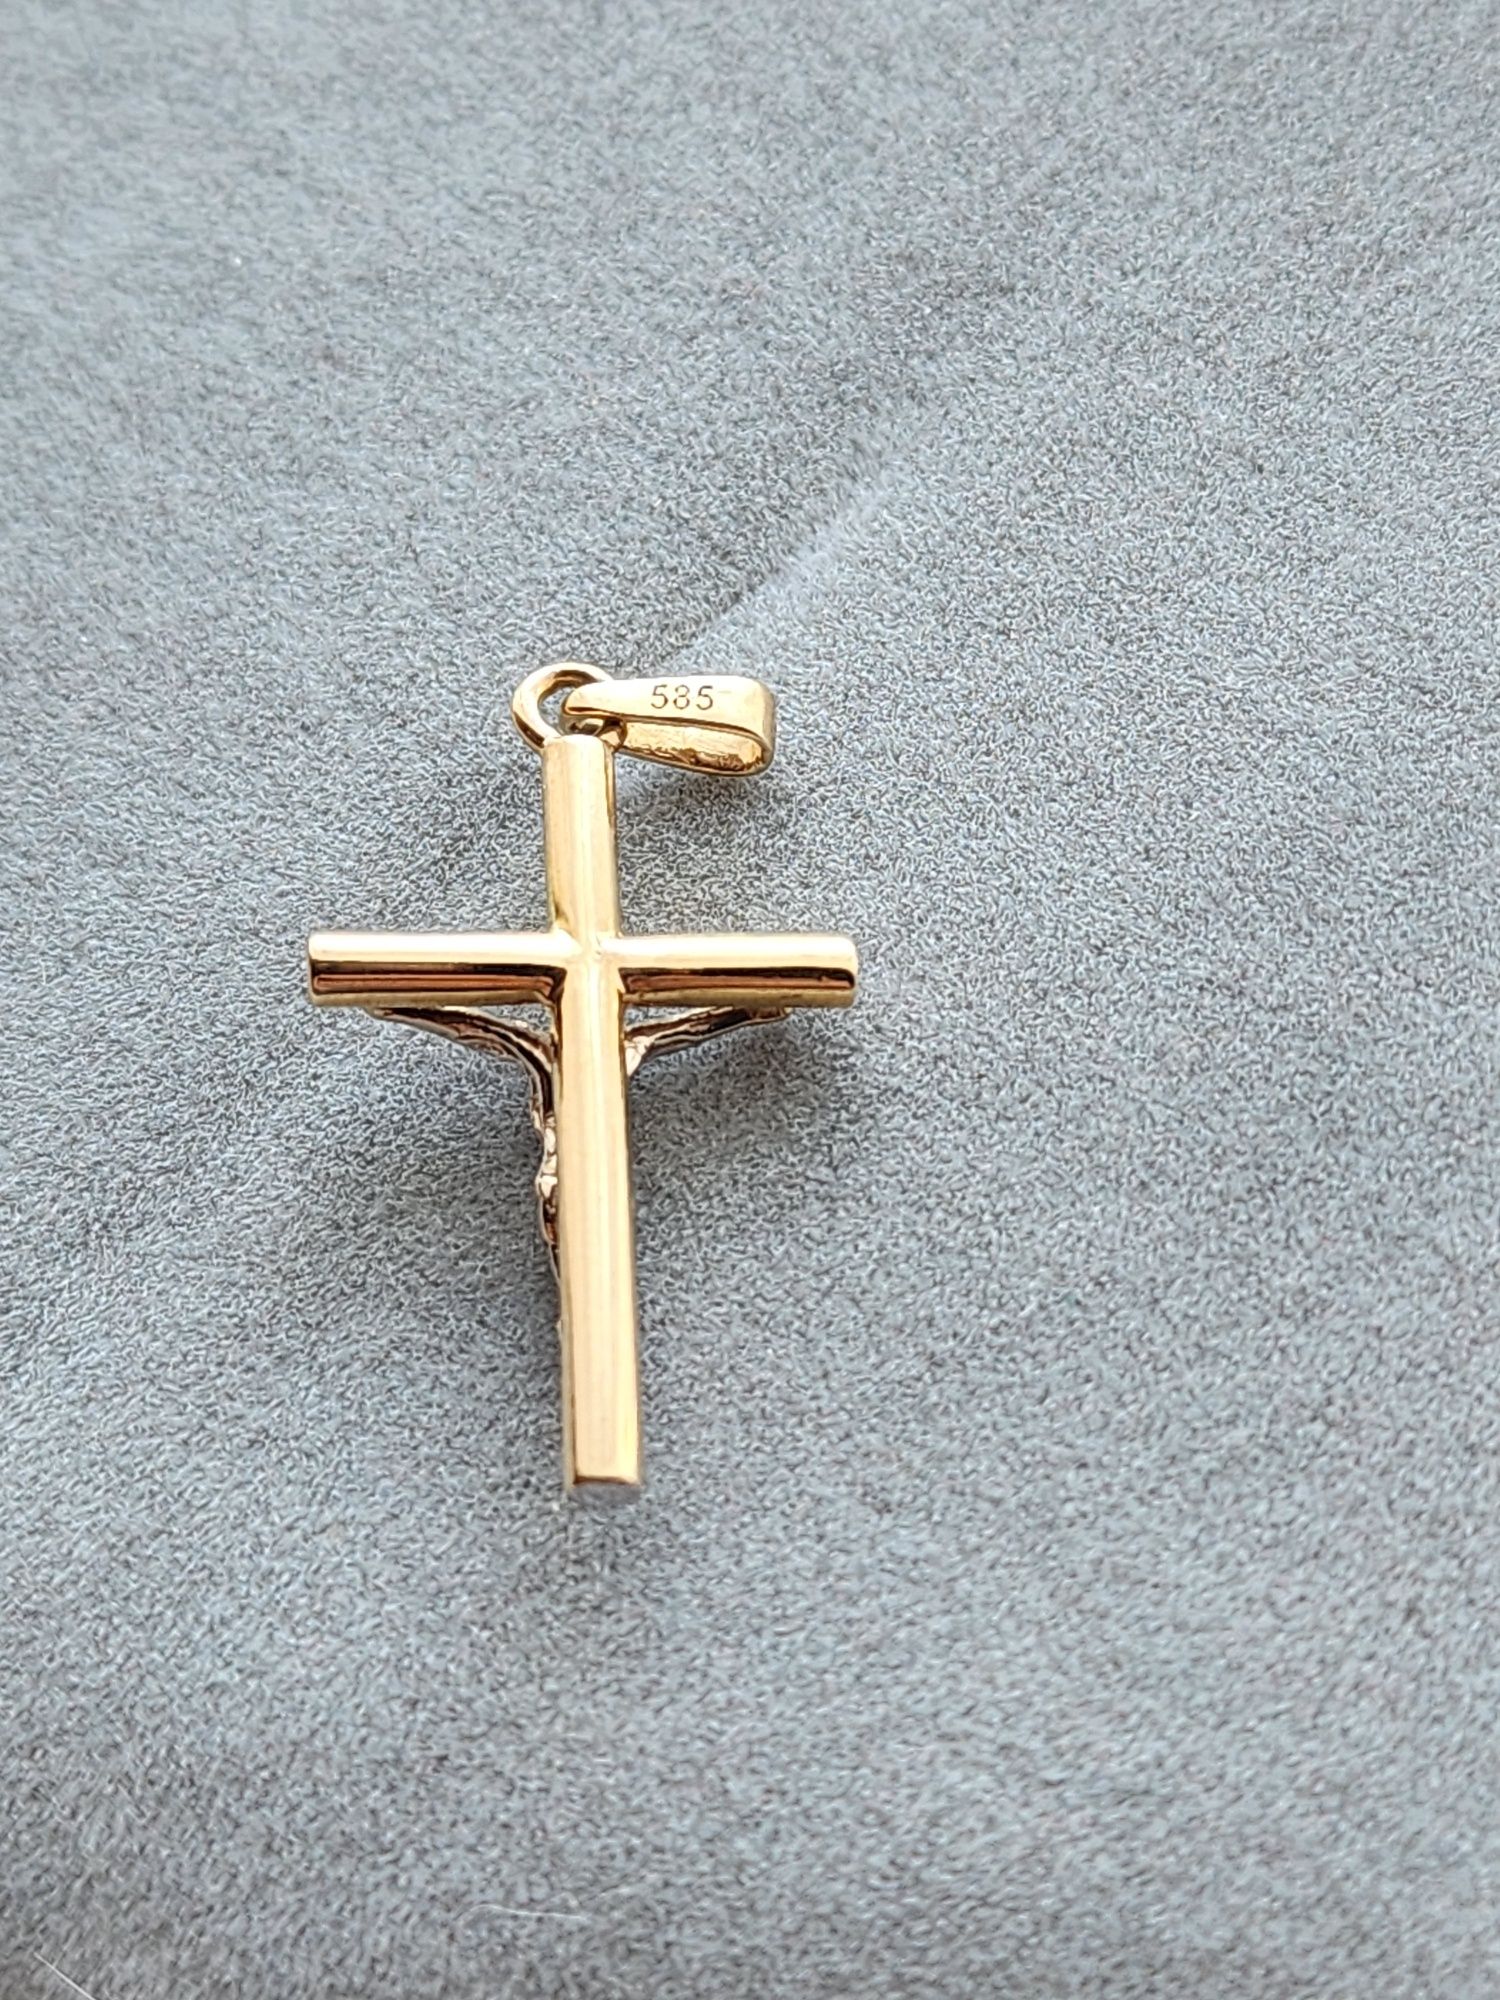 Новый стильный Золотой крестик 585 пр.